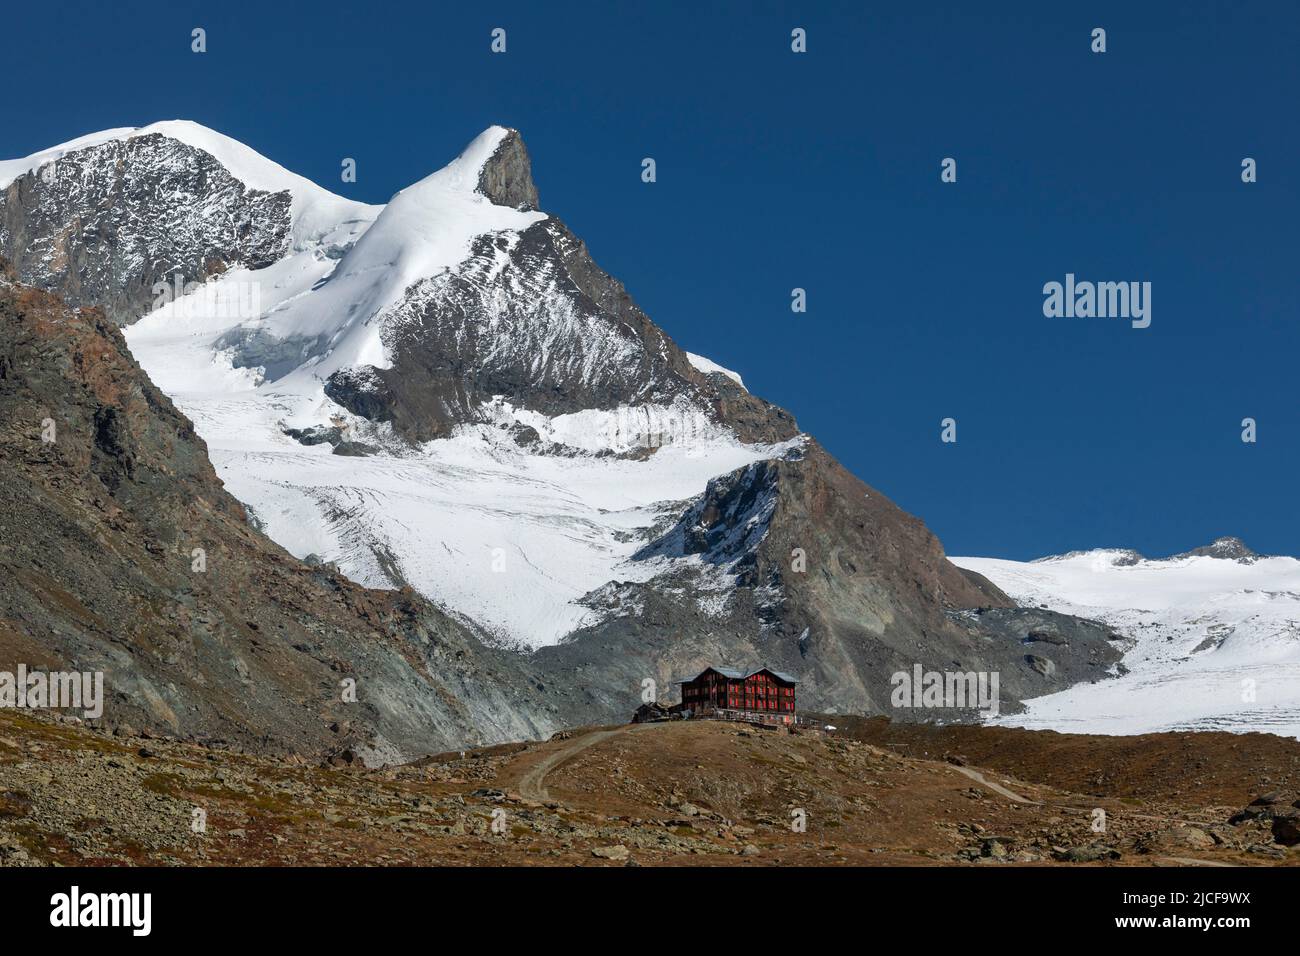 Berghaus Fluhalp (2606m), Findel glacier behind, Zermatt, Alps, Valais, Switzerland Stock Photo